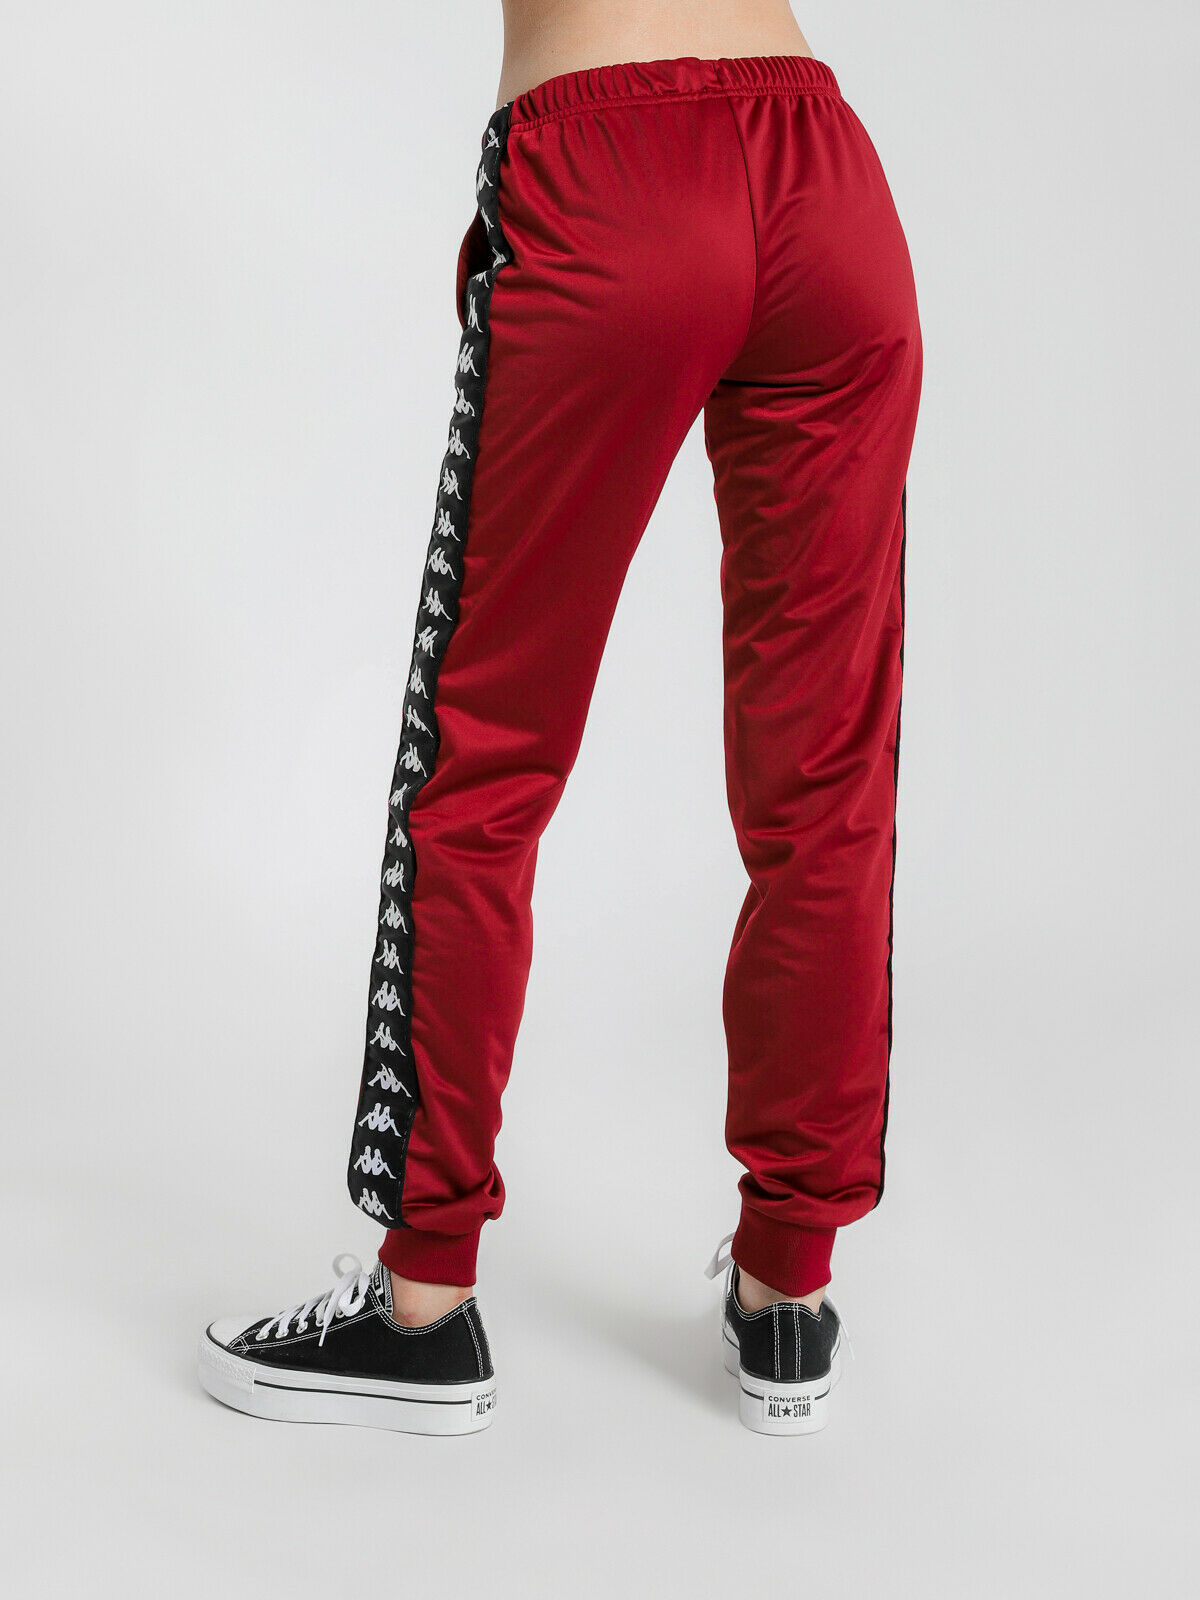 222 Banda Wrastoria Slim Fit Track Pants in Red Granat